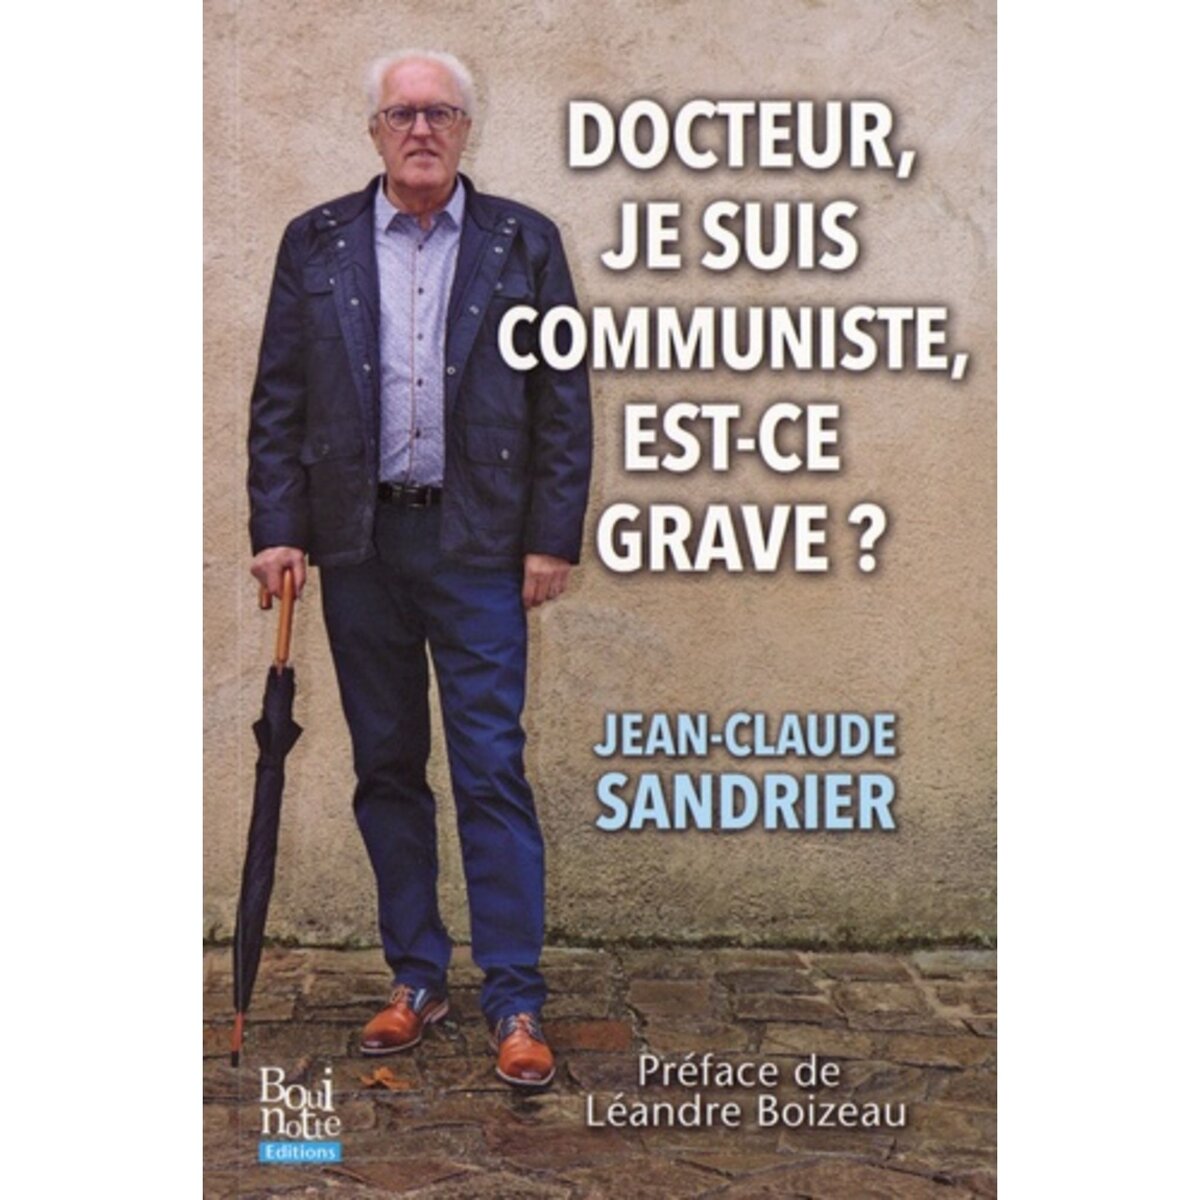  DOCTEUR, JE SUIS COMMUNISTE, EST-CE GRAVE ?, Sandrier Jean-Claude